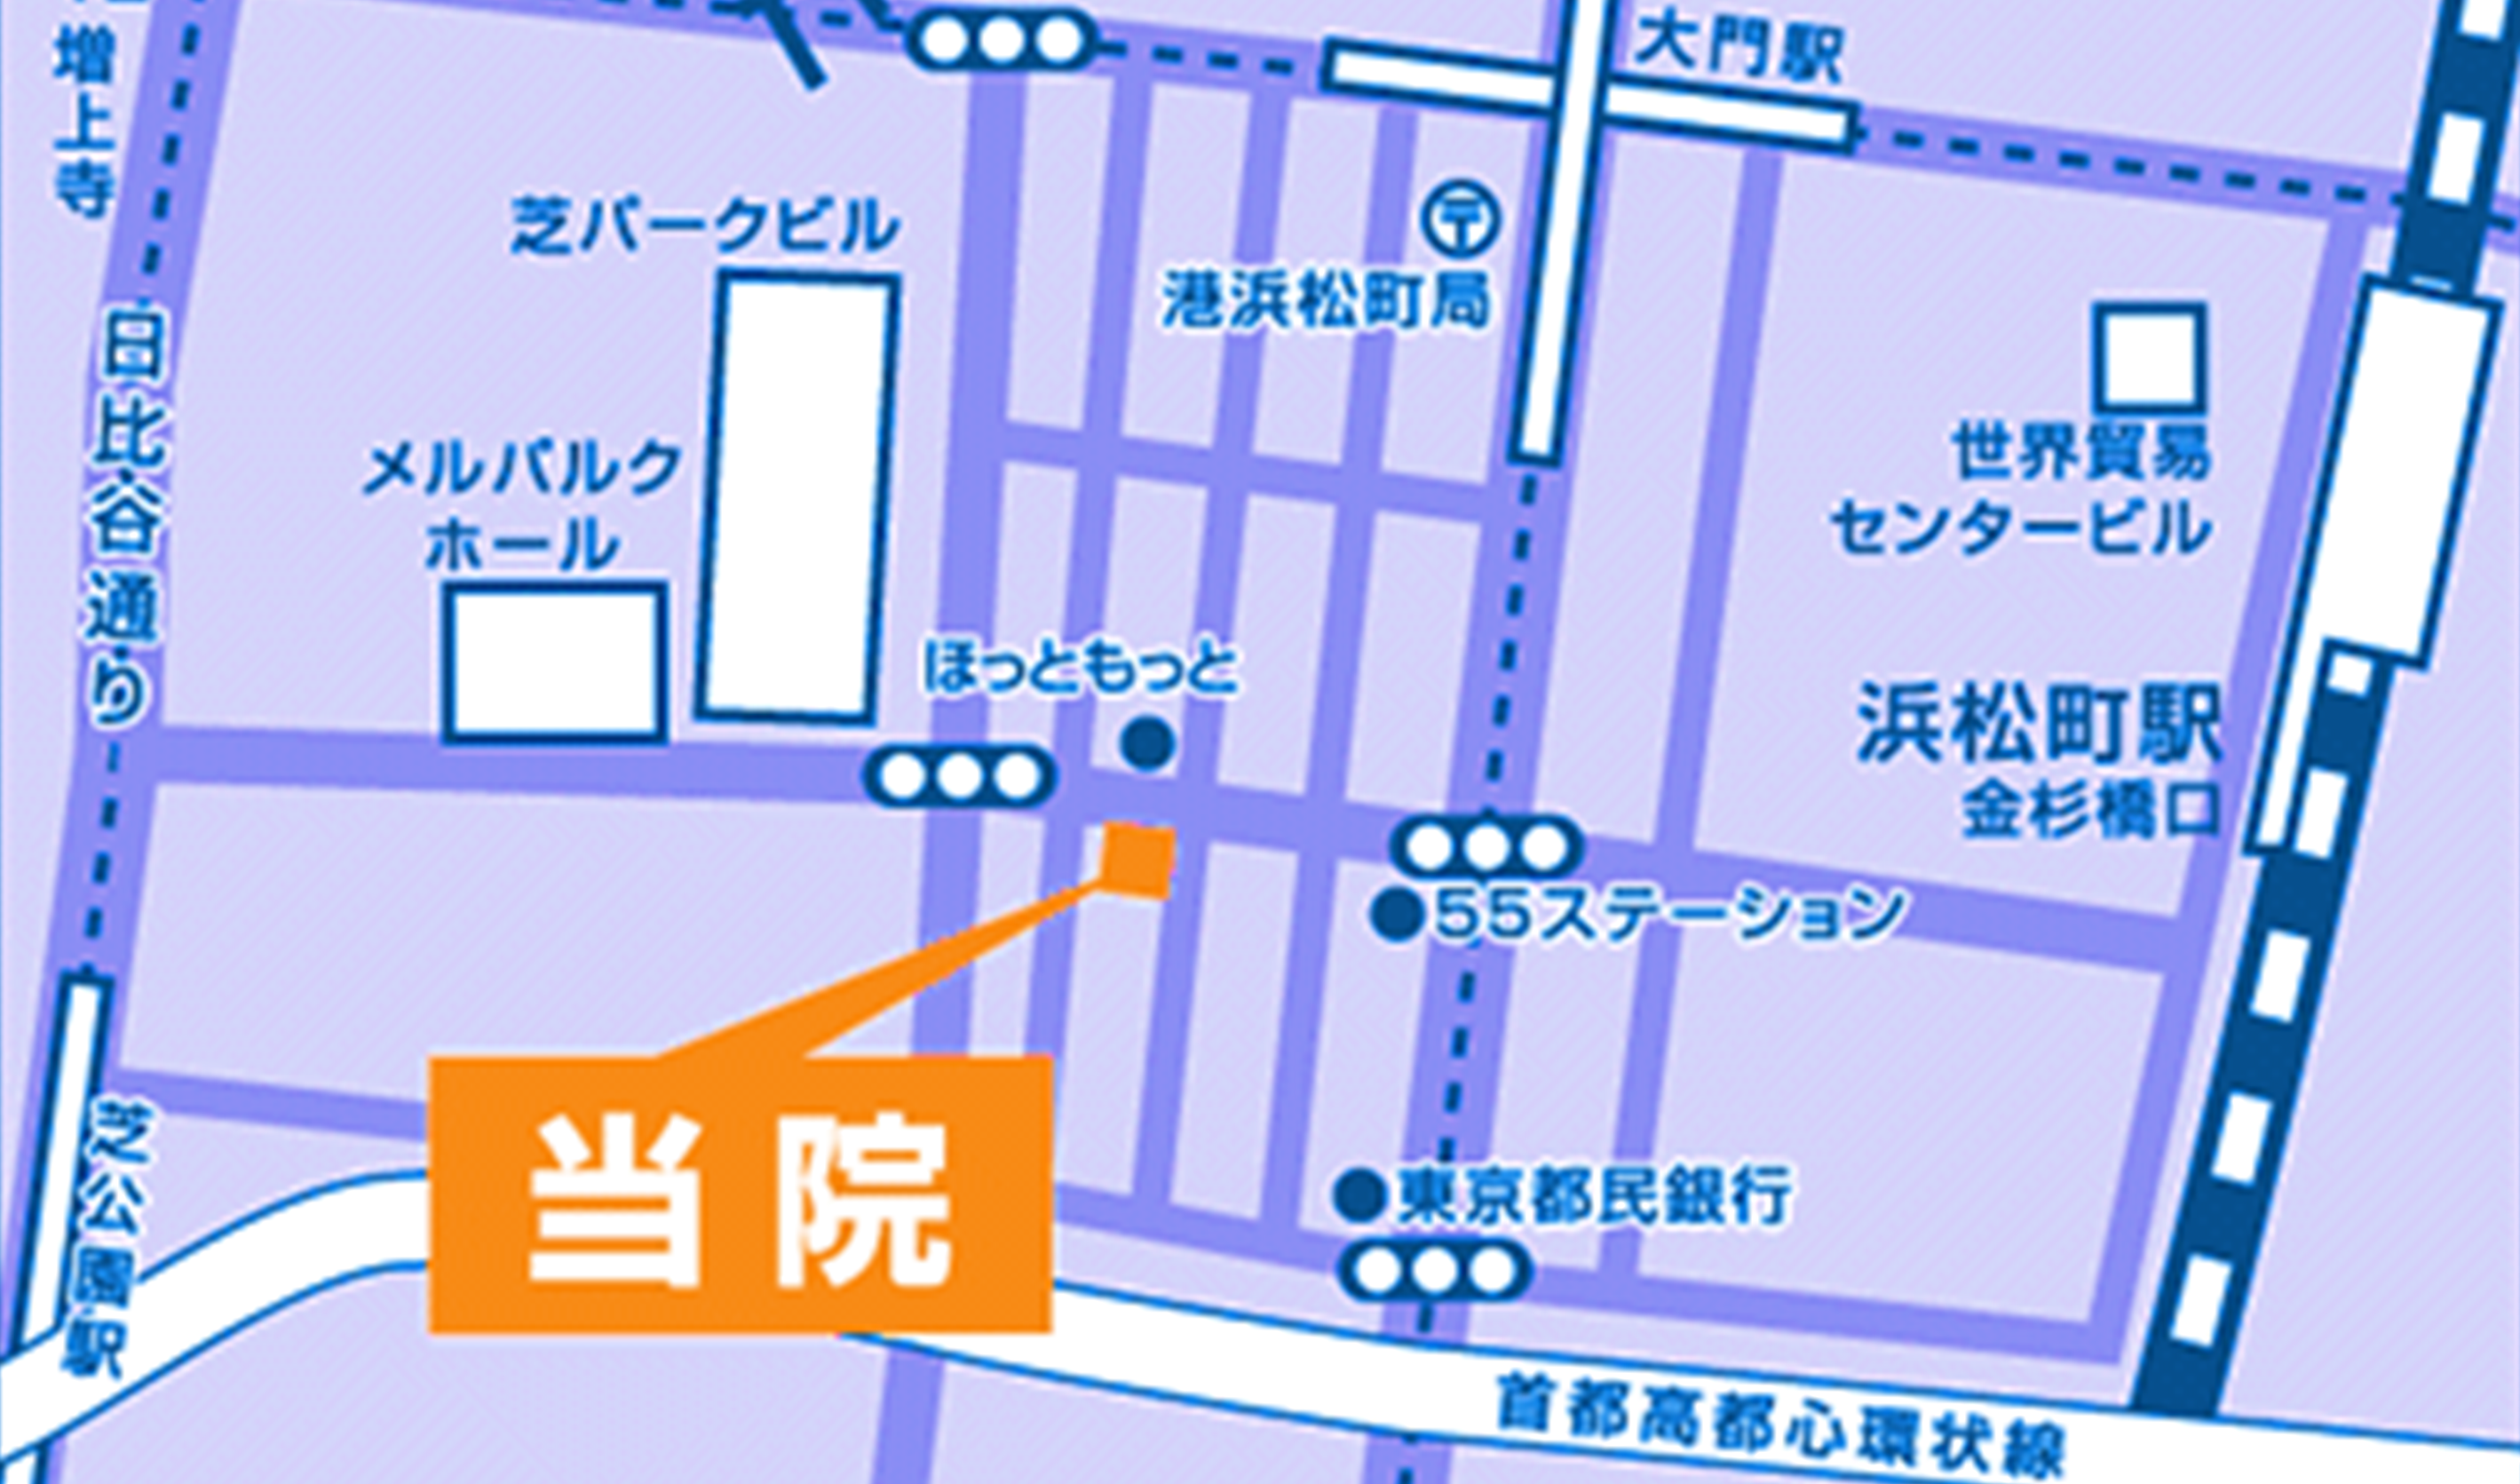 細川内科クリニックの地図